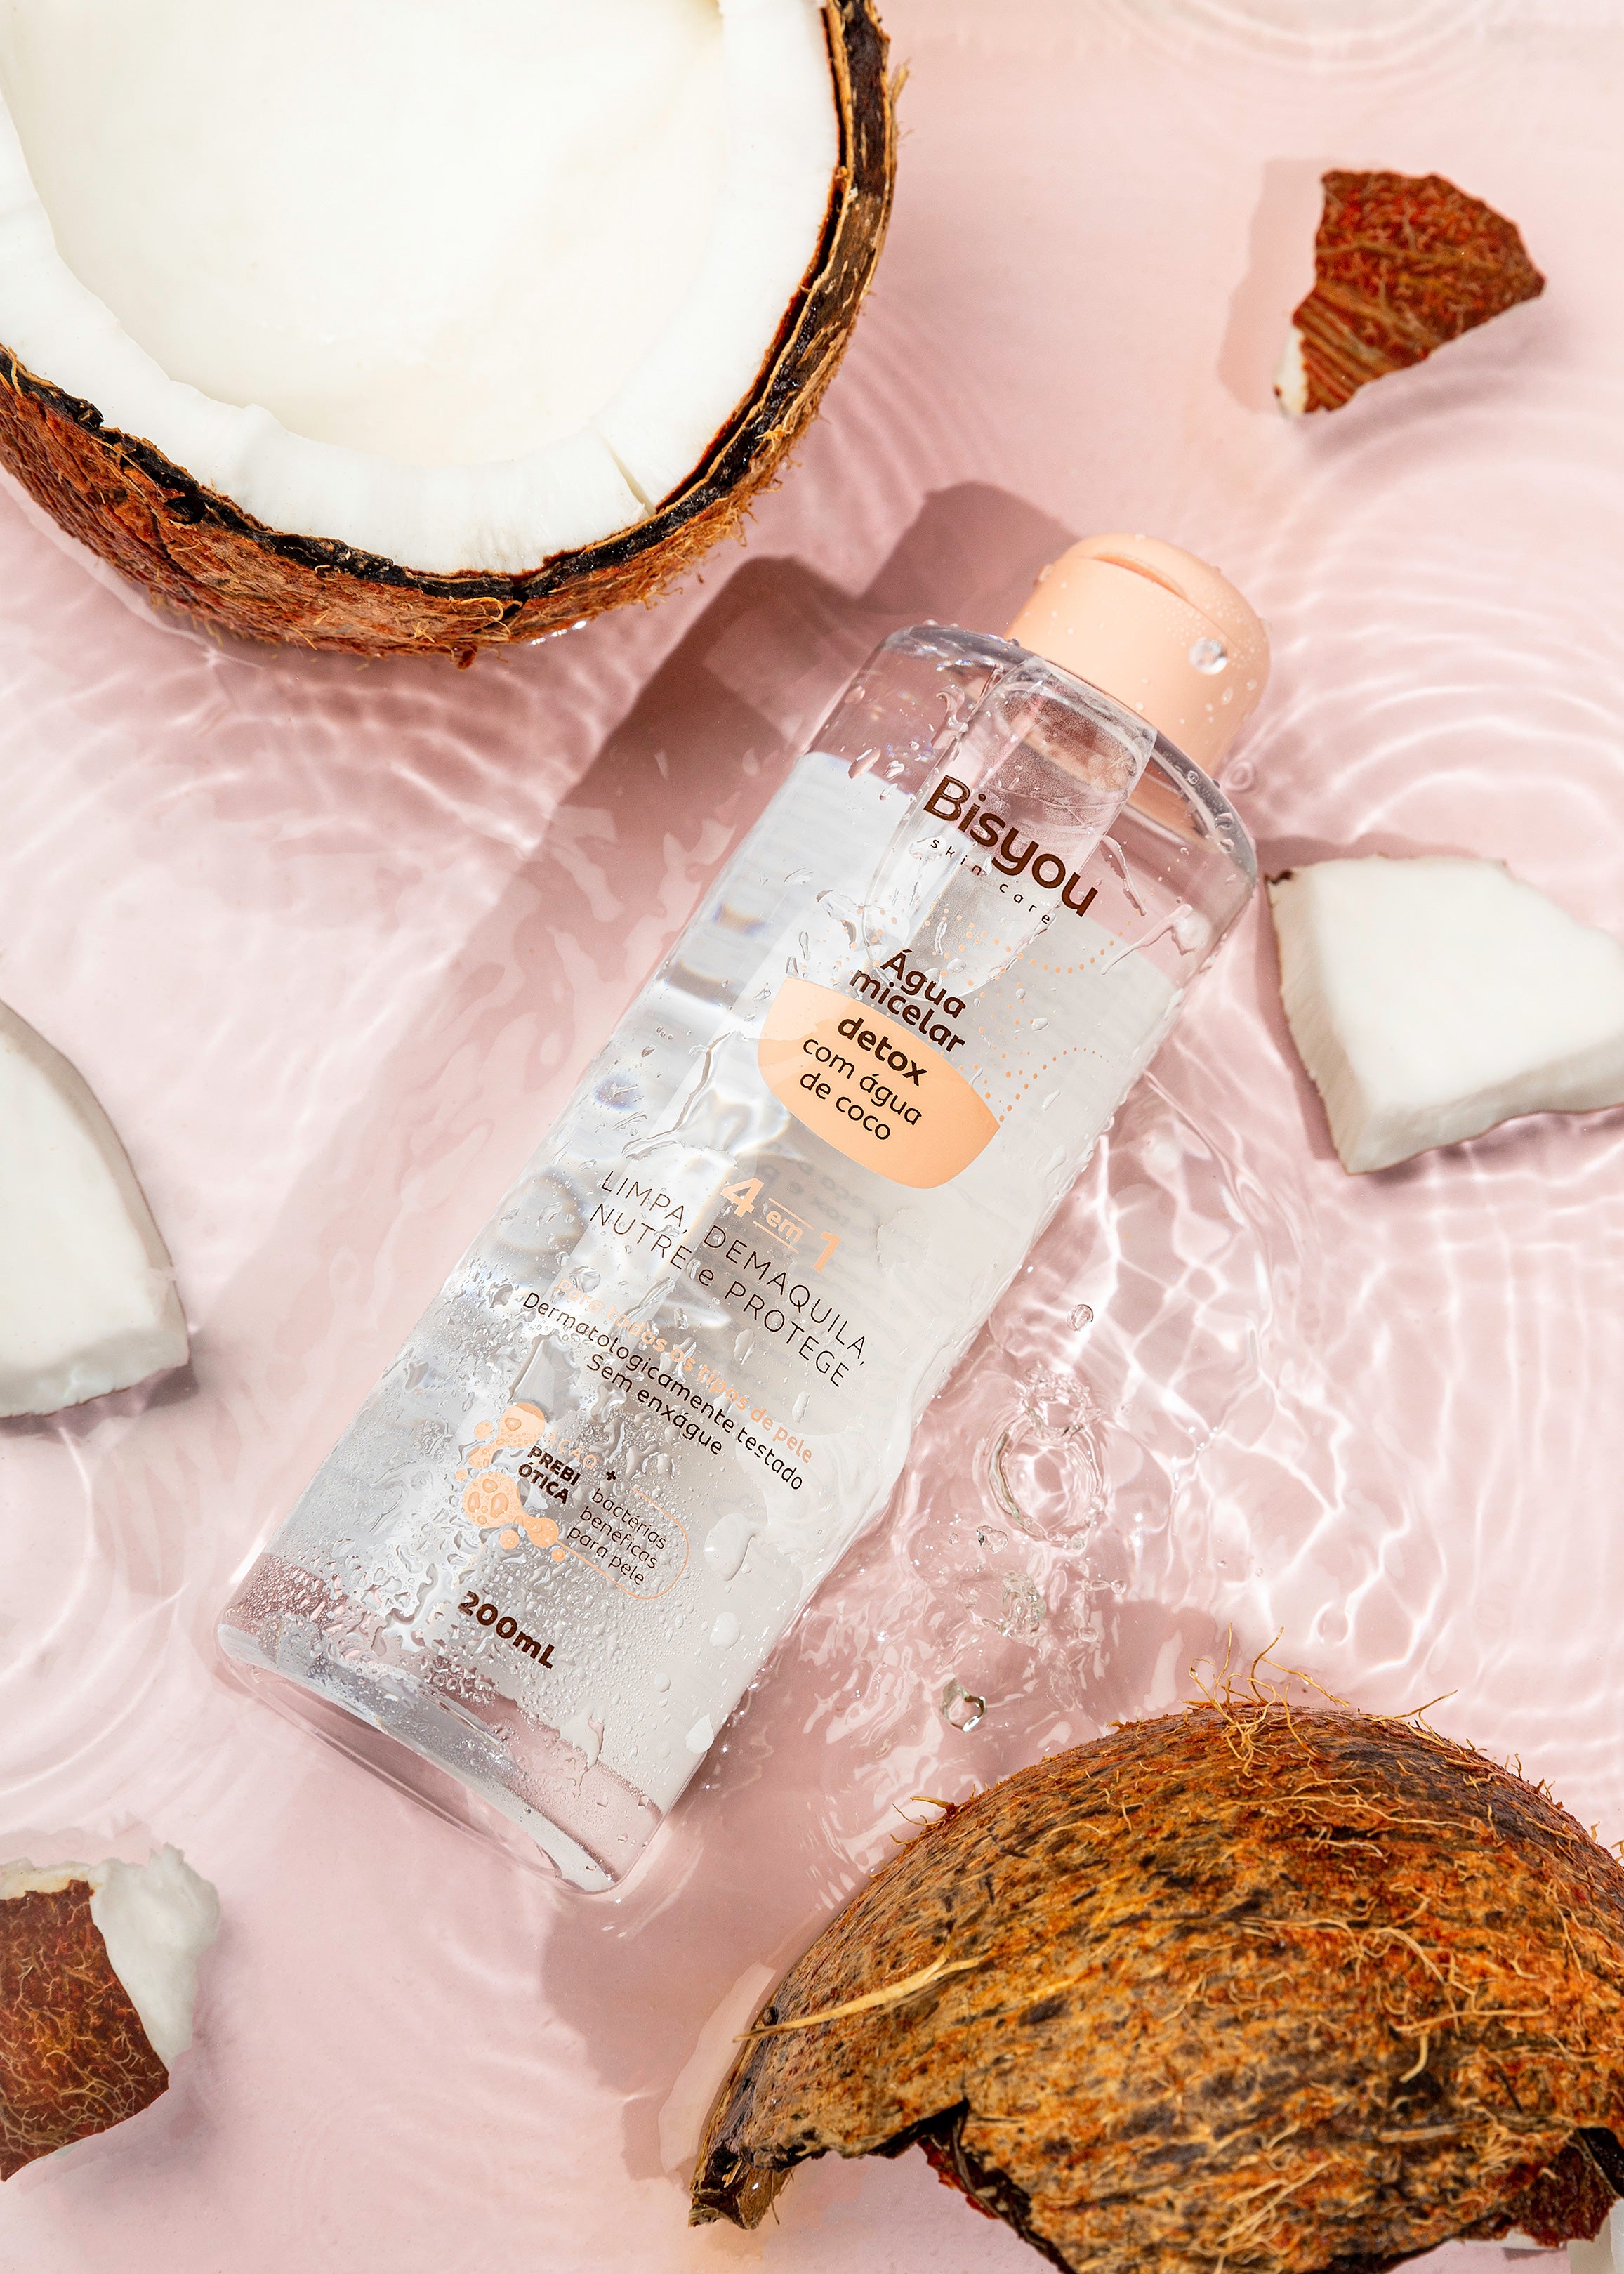 Frescor, hidratação e saúde: entenda como a água de coco pode beneficiar sua pele!